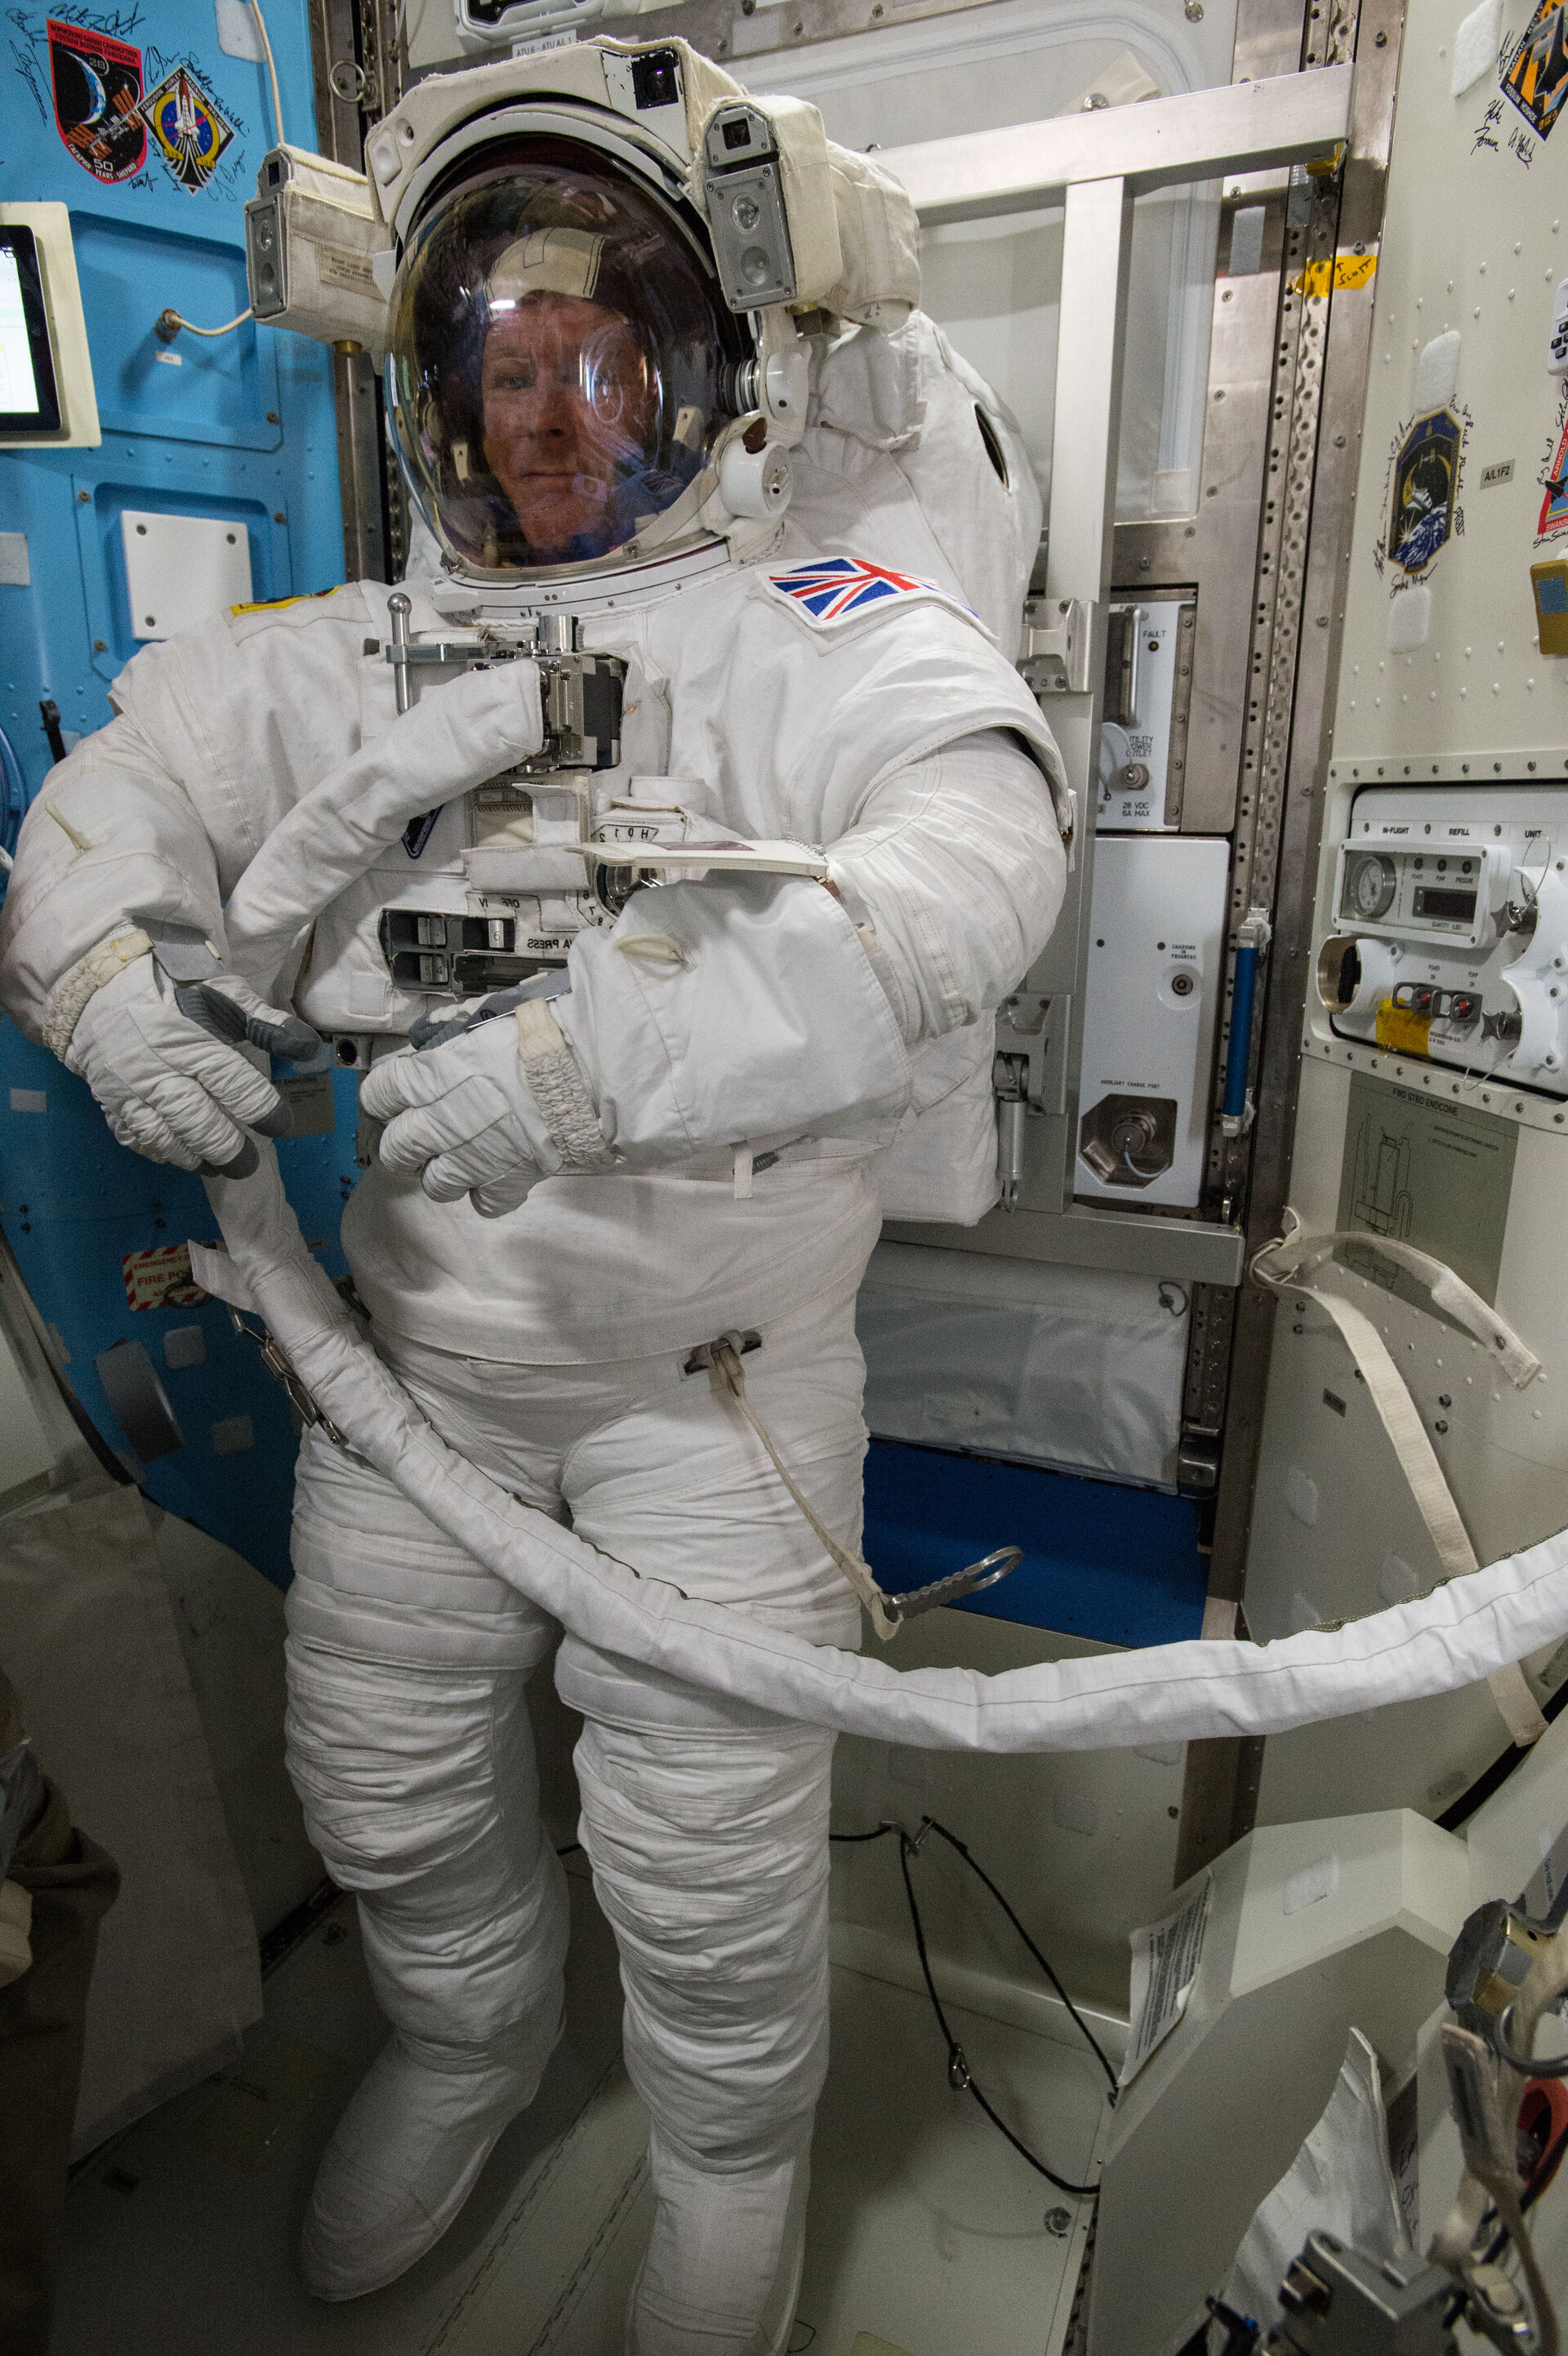 Tim Peake testing spacesuit before spacewalk